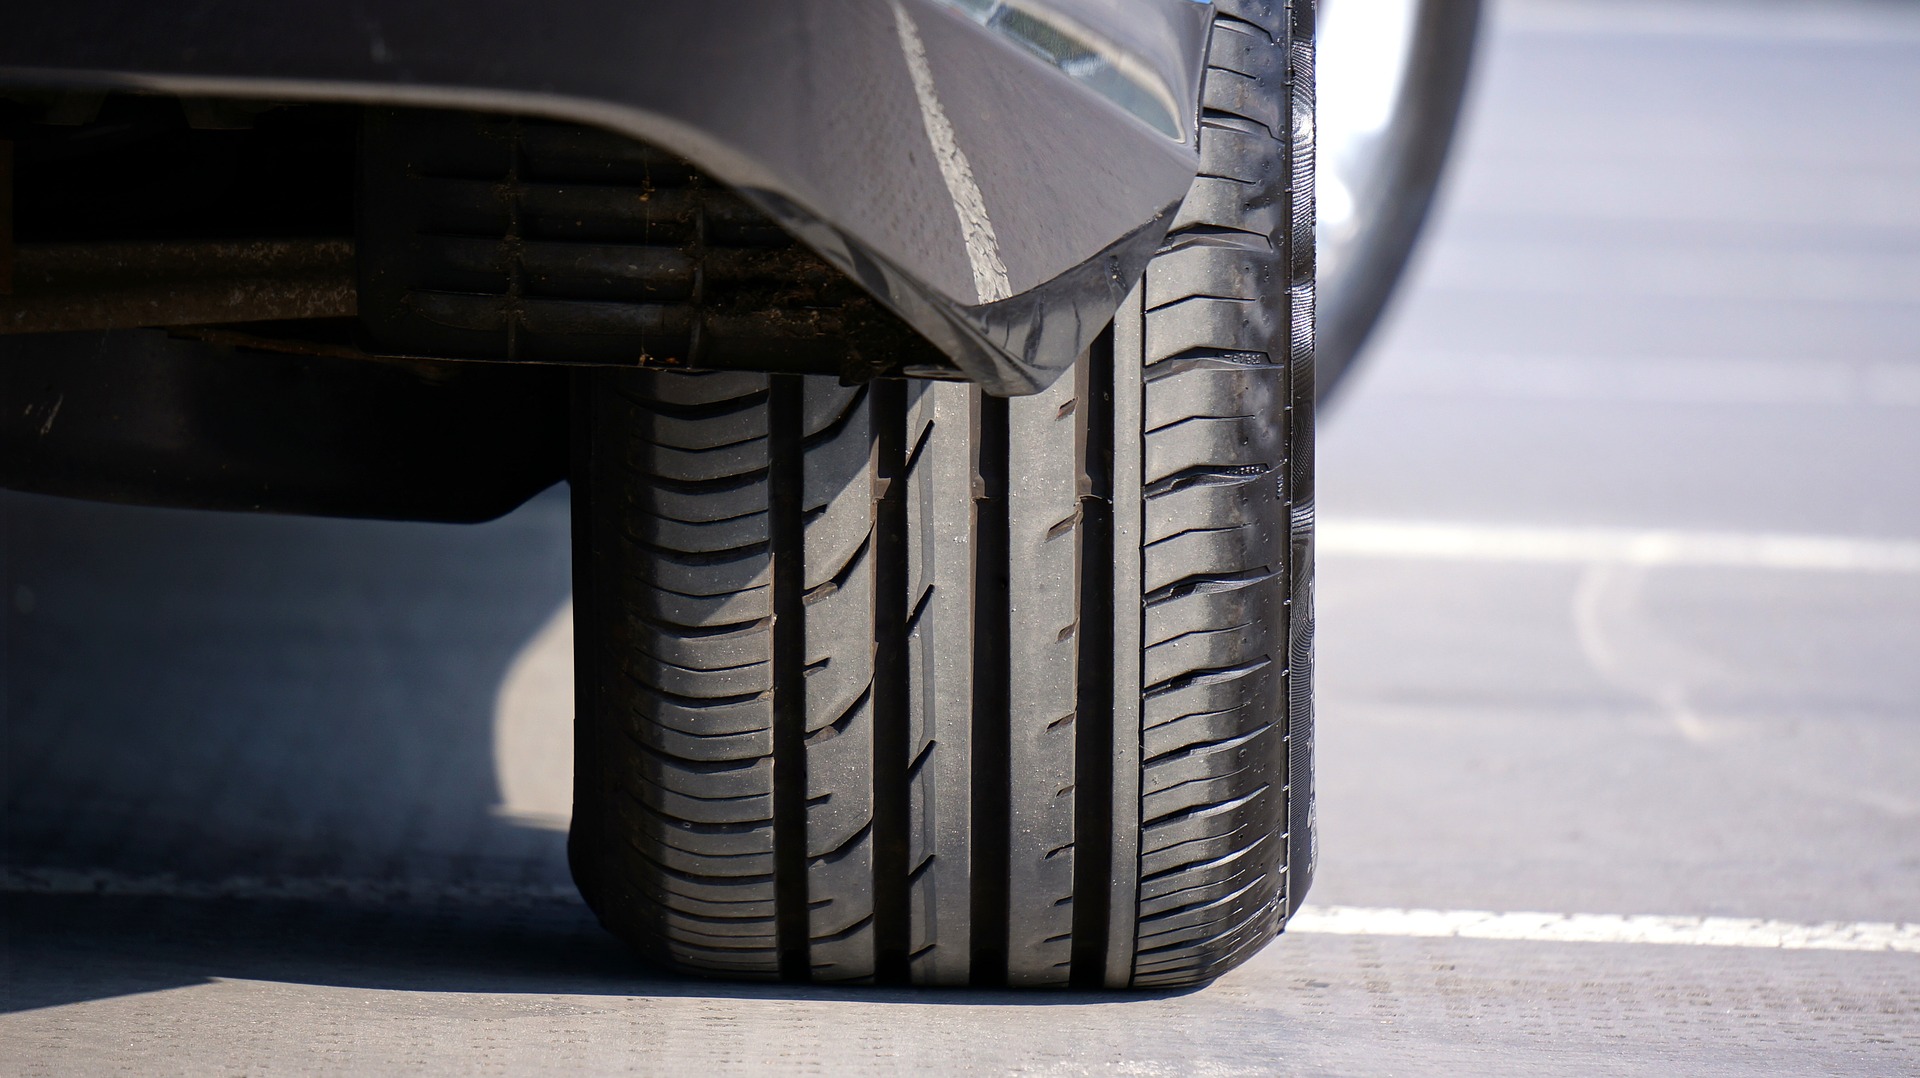 Acquisto di pneumatici per auto: quale soluzione migliore?